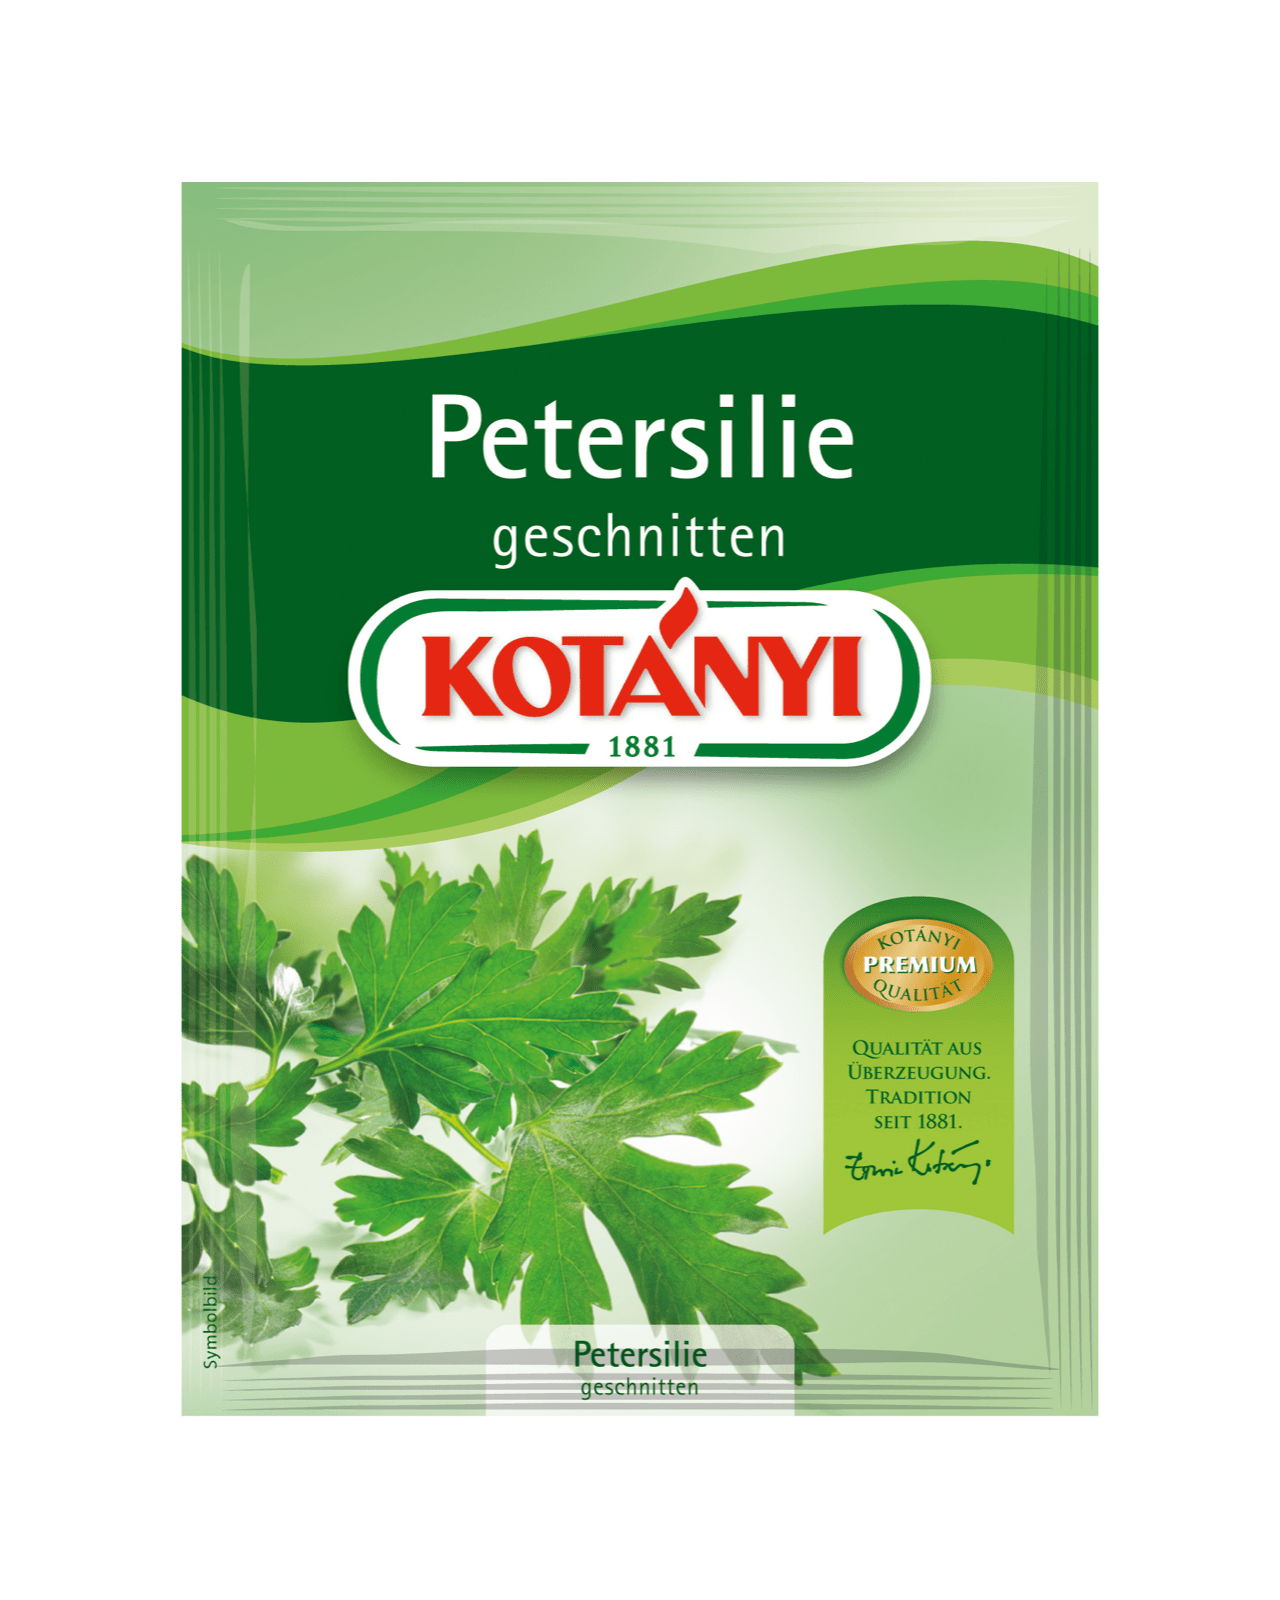 Petersilie geschnitten | Kotányi